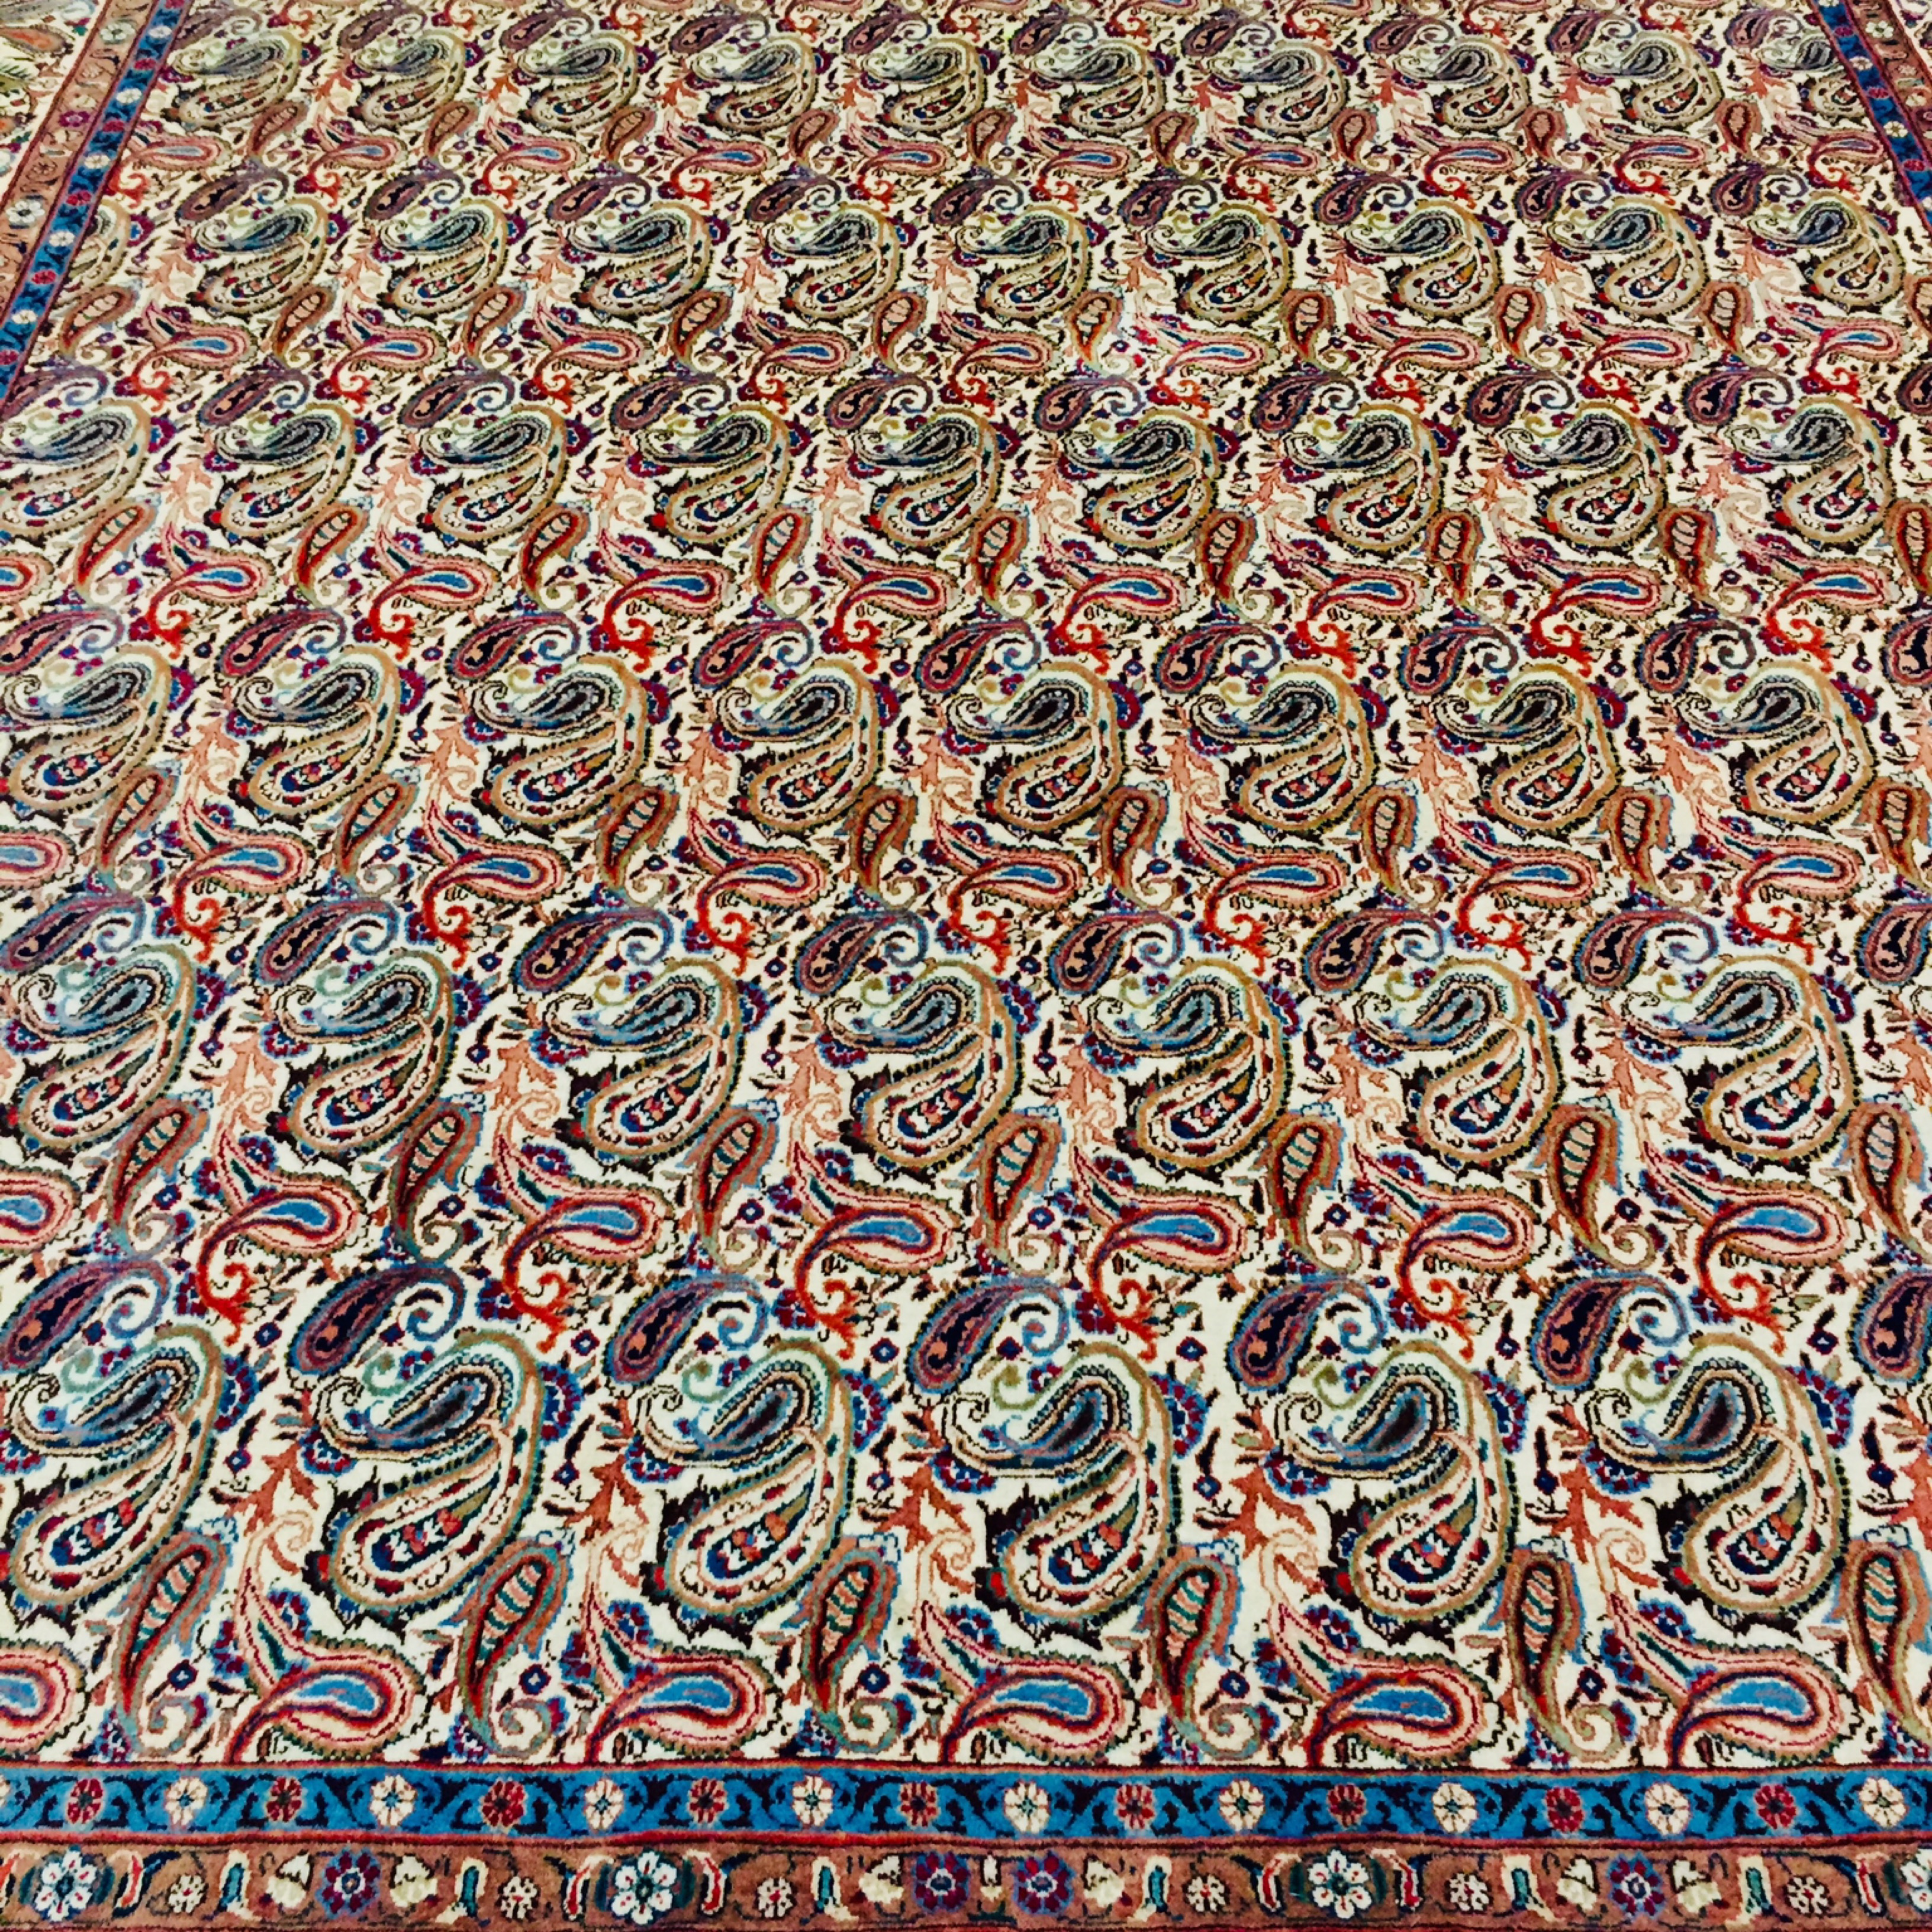 Bringing back the bang: Colourful carpets 